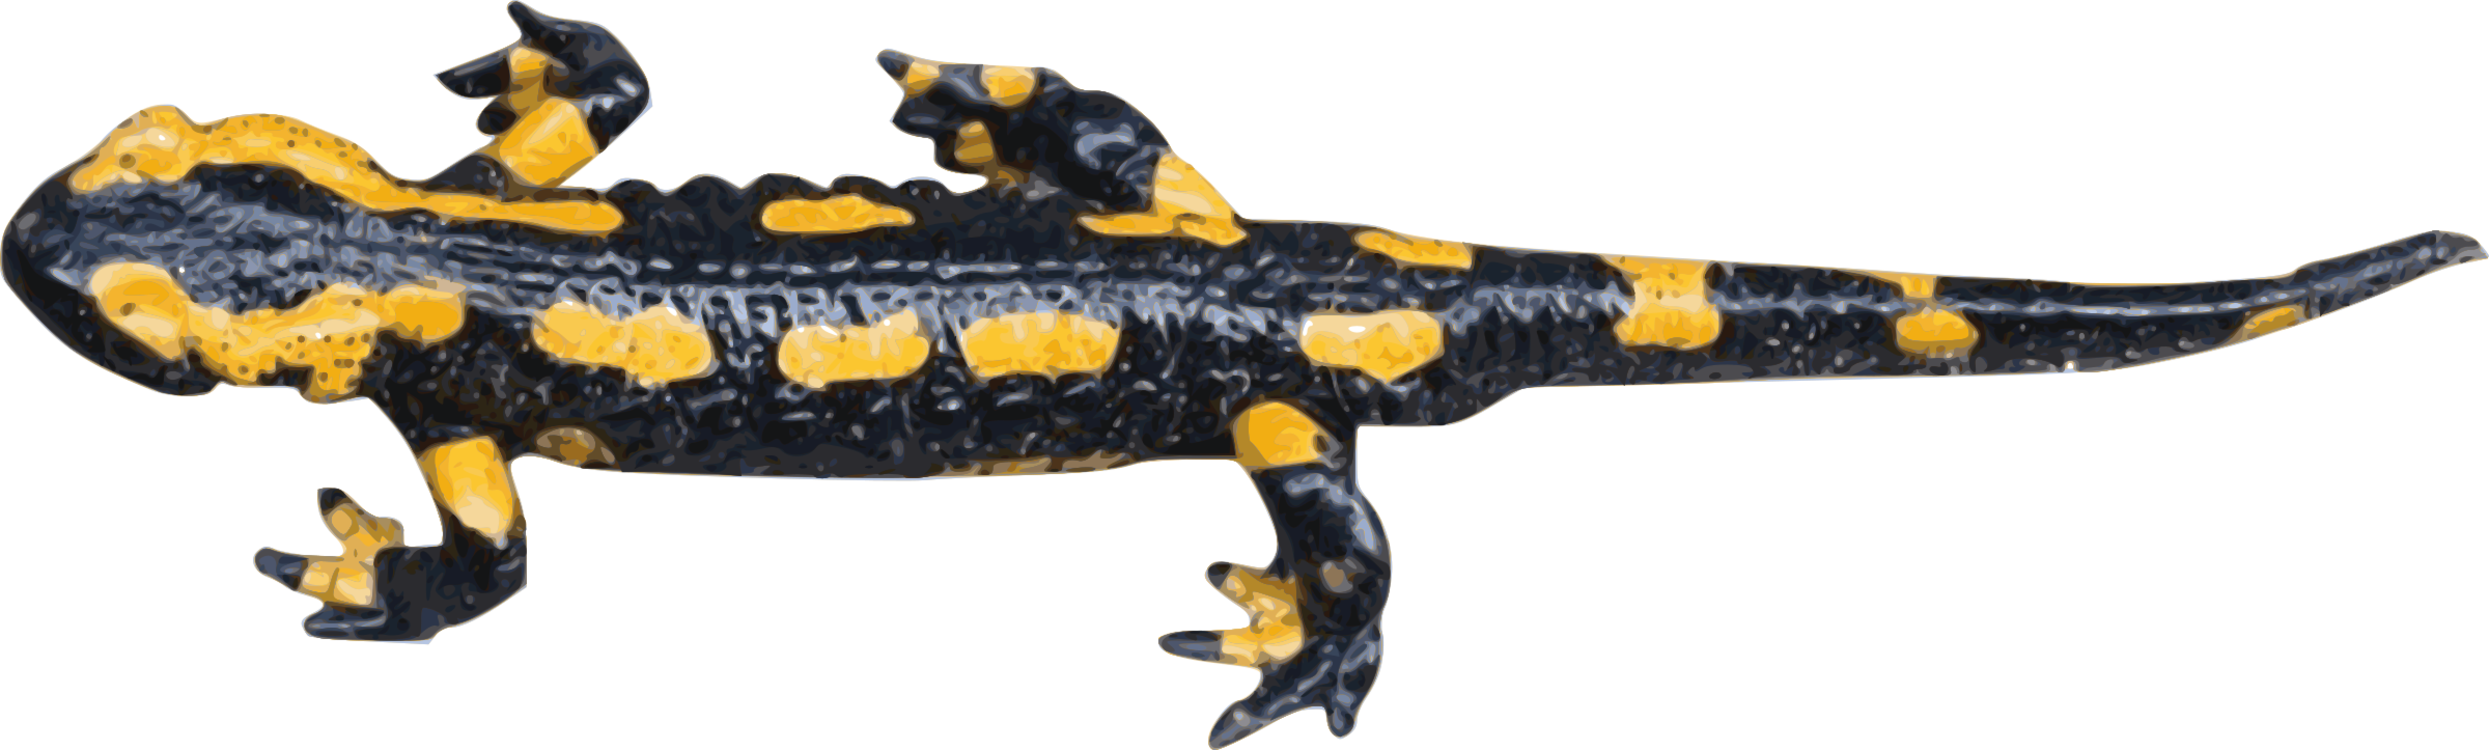 Salamandra,Spotted Salamander,Salamander